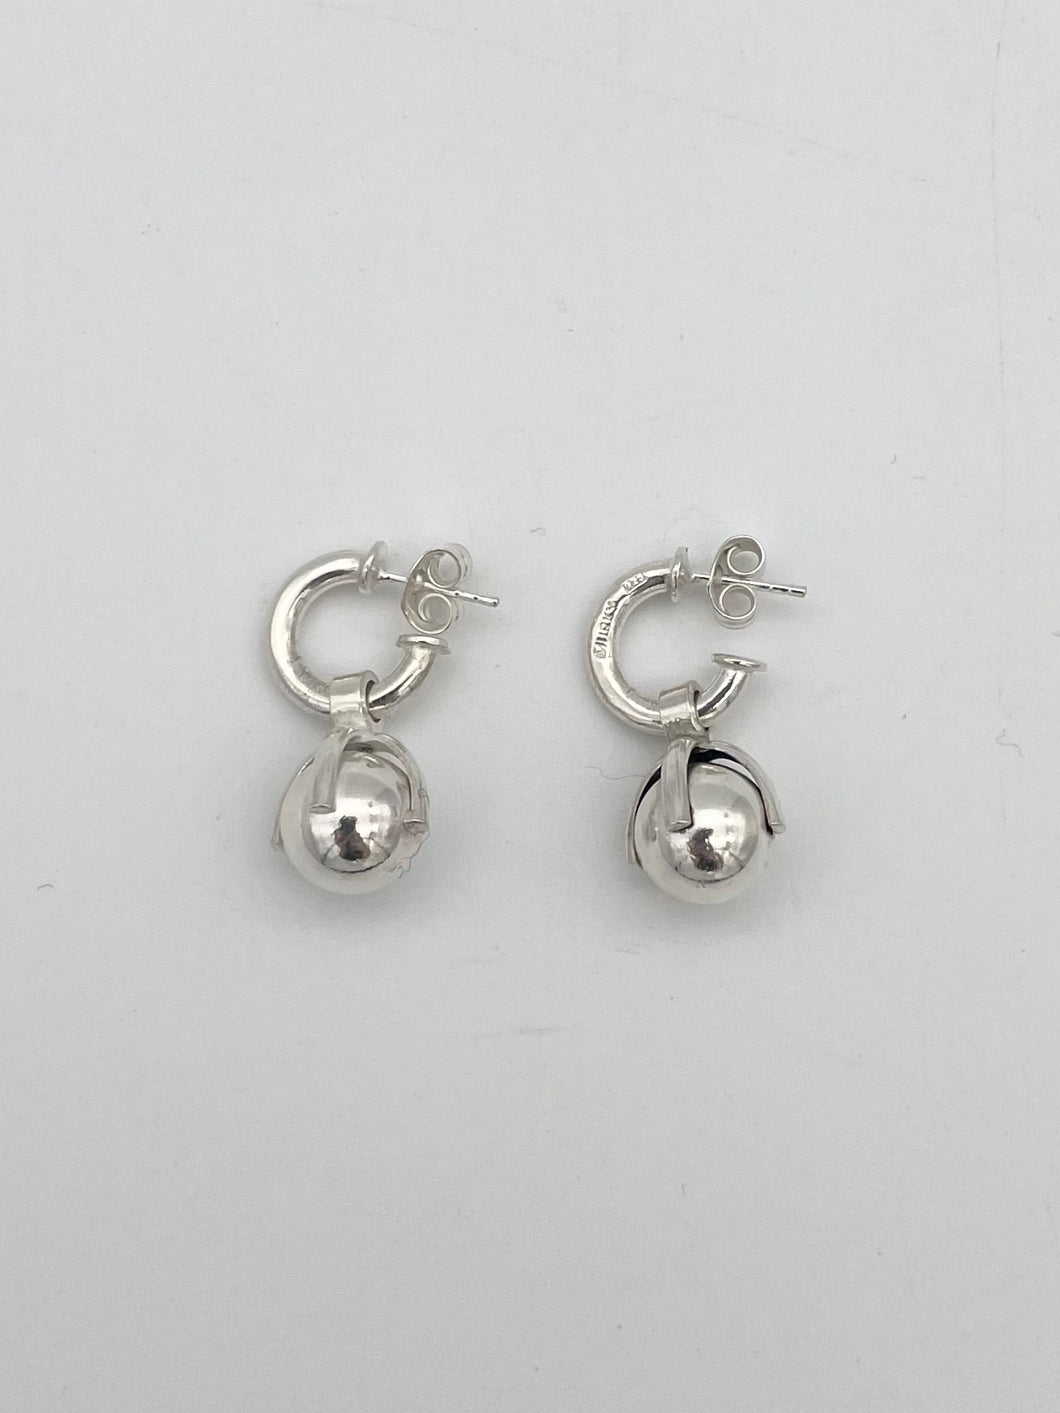 Murky earrings